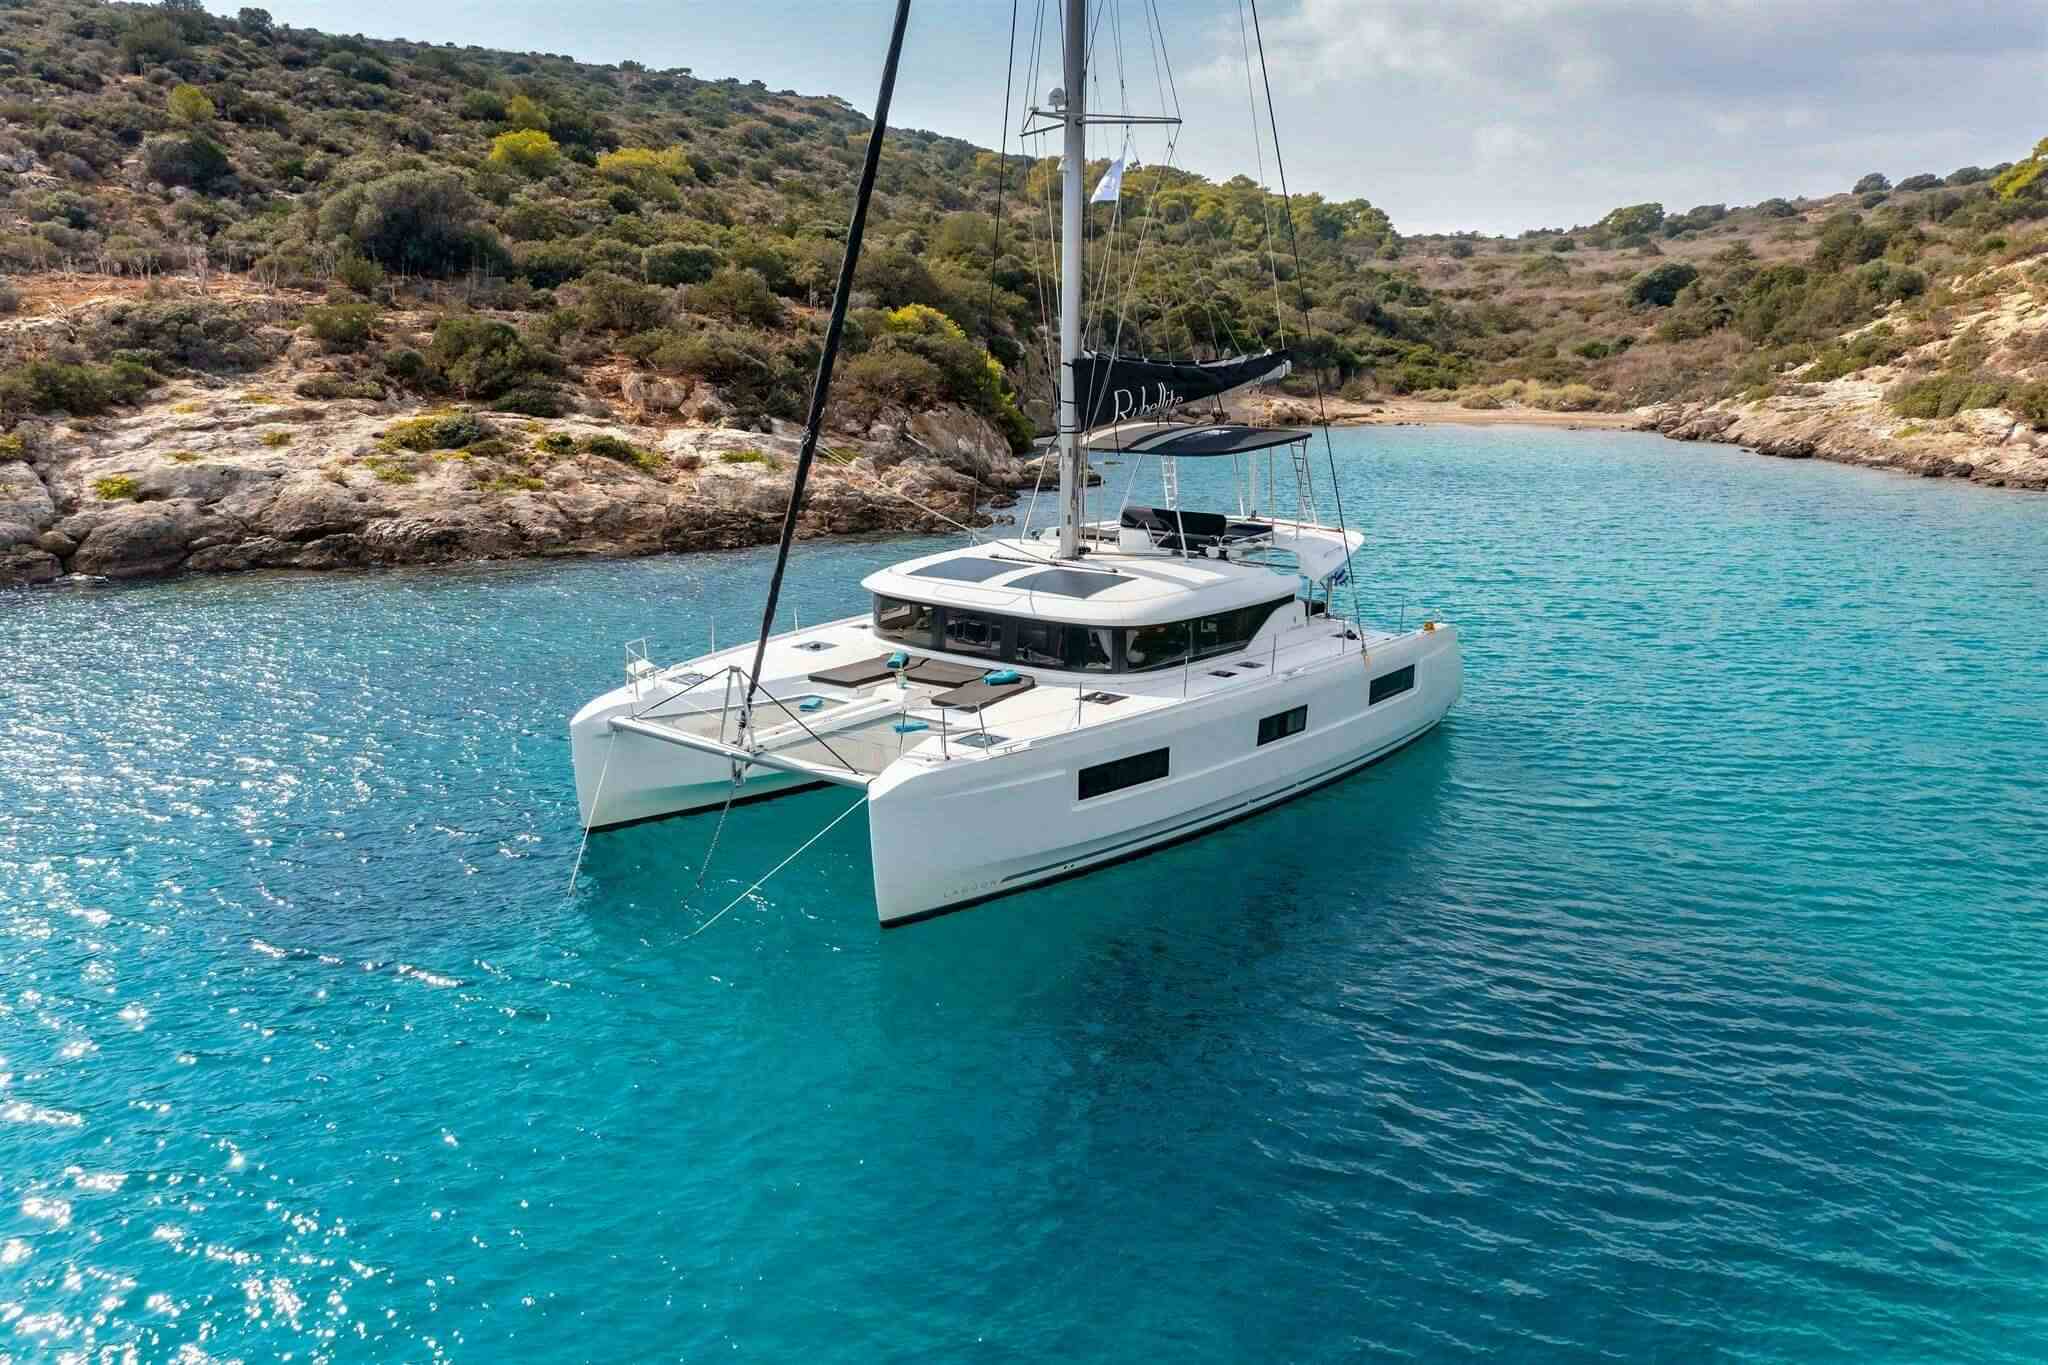 PEPE - Yacht Charter Novalja & Boat hire in Croatia 1